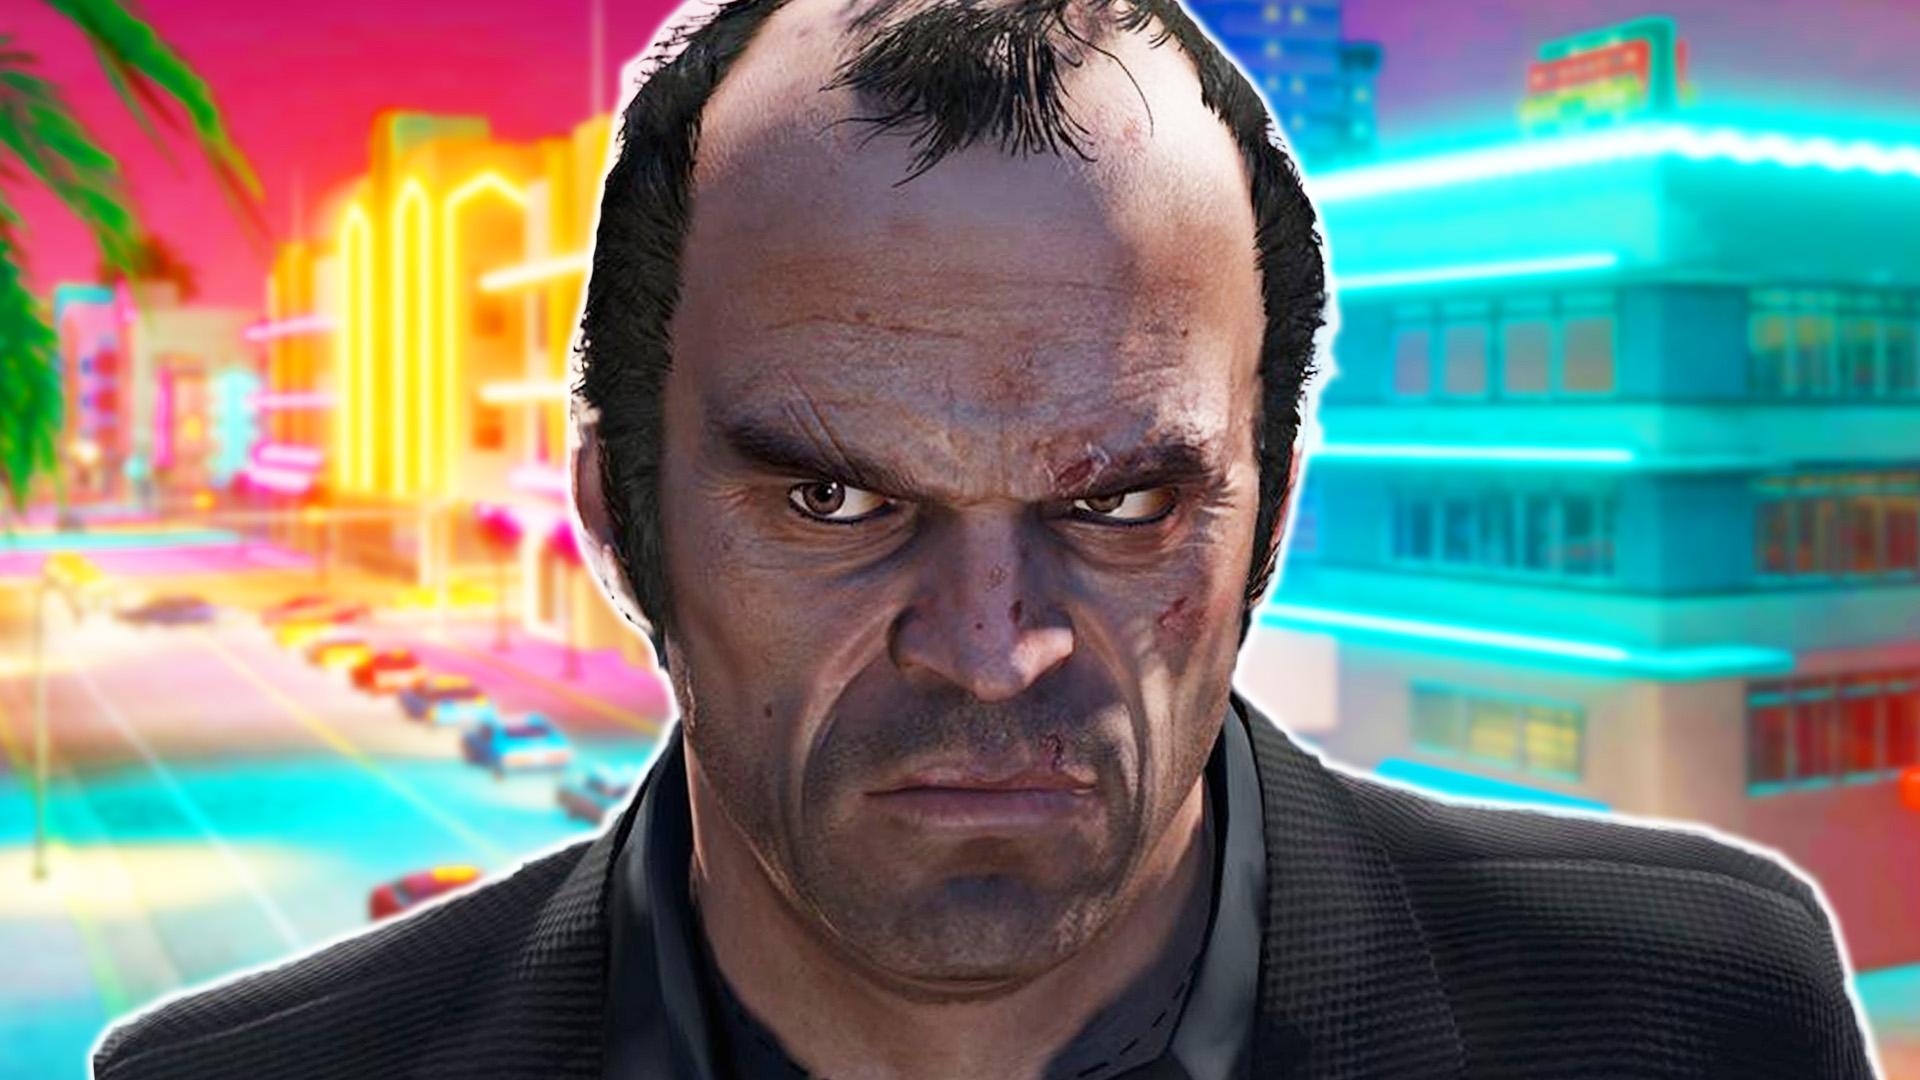 Biggest Rockstar Games' GTA 6 leaks and rumors: Announcement date